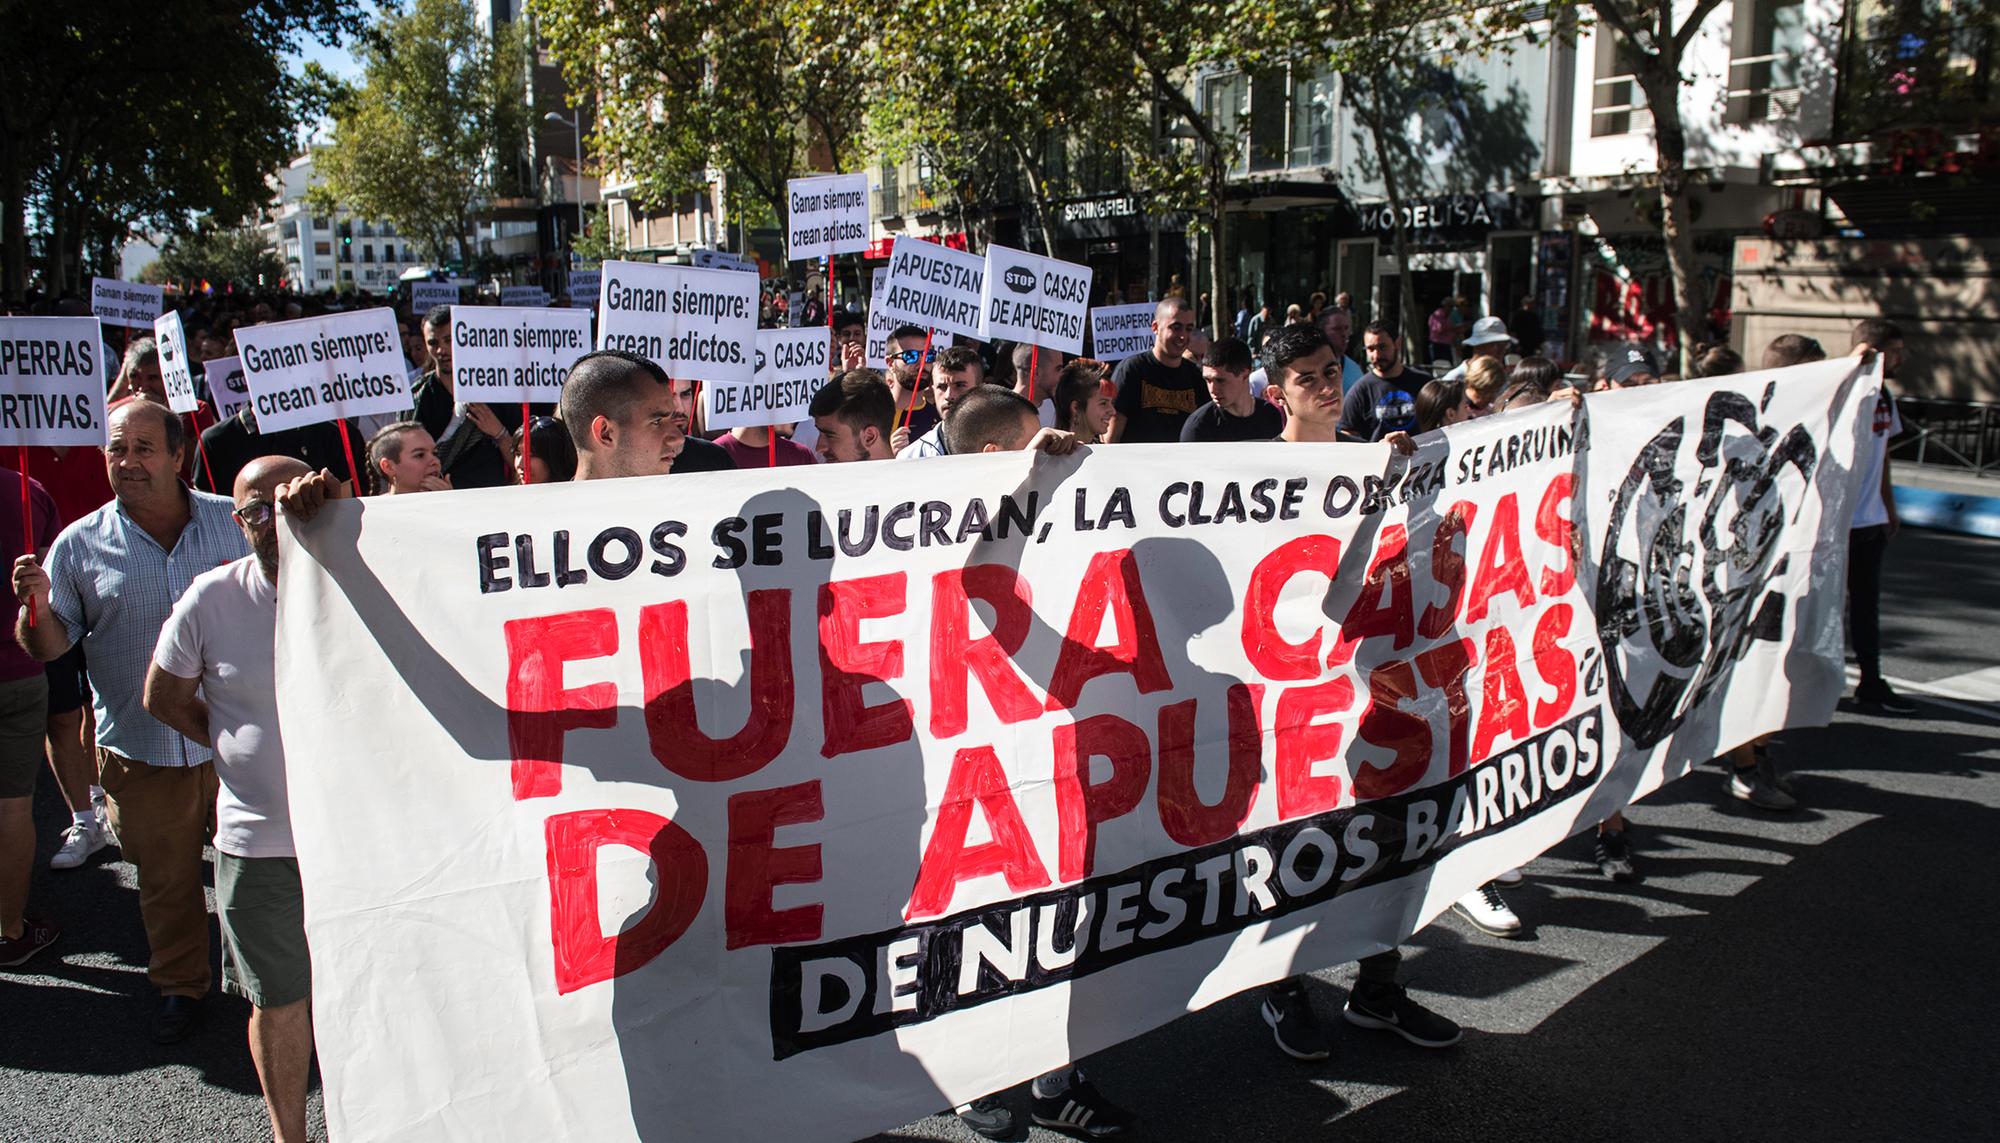 Manifestacion contra las casa de apuestas en el barrio de Tetuan, Madrid 1